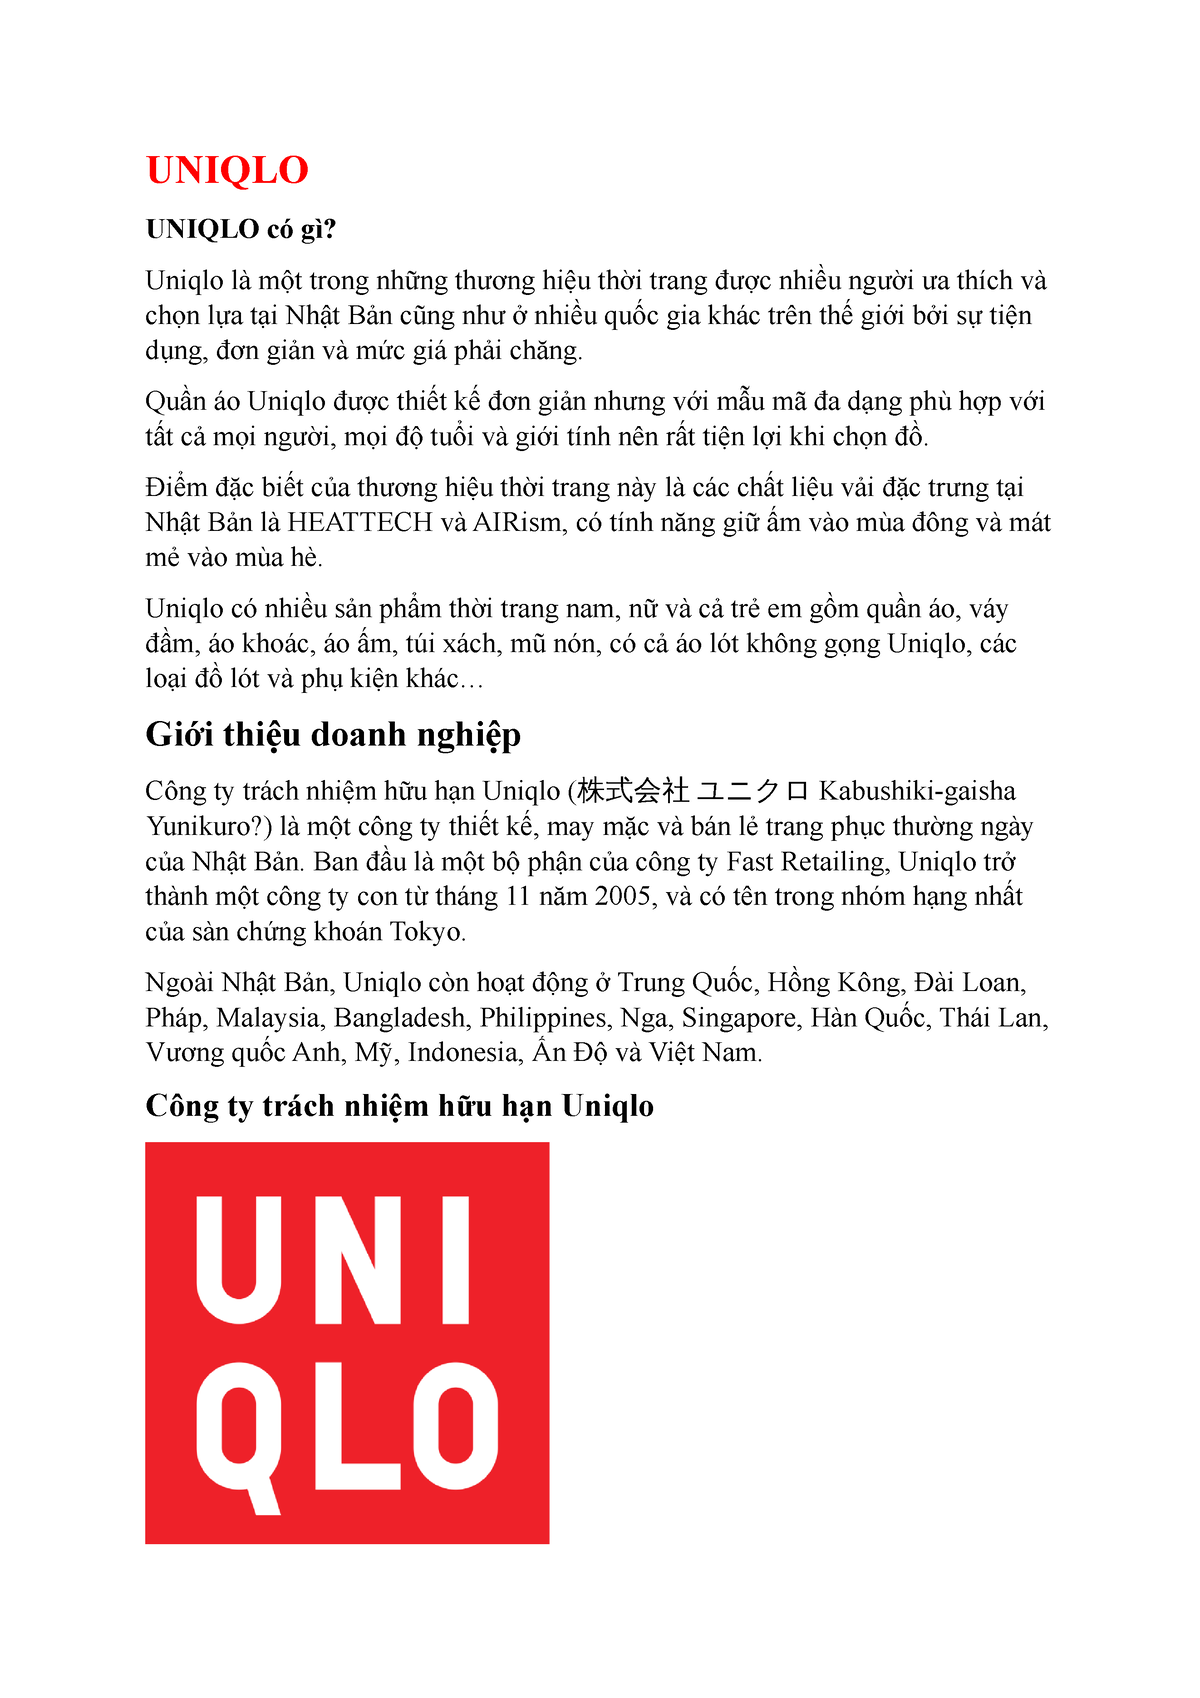 Tìm hiểu về thương hiệu Uniqlo